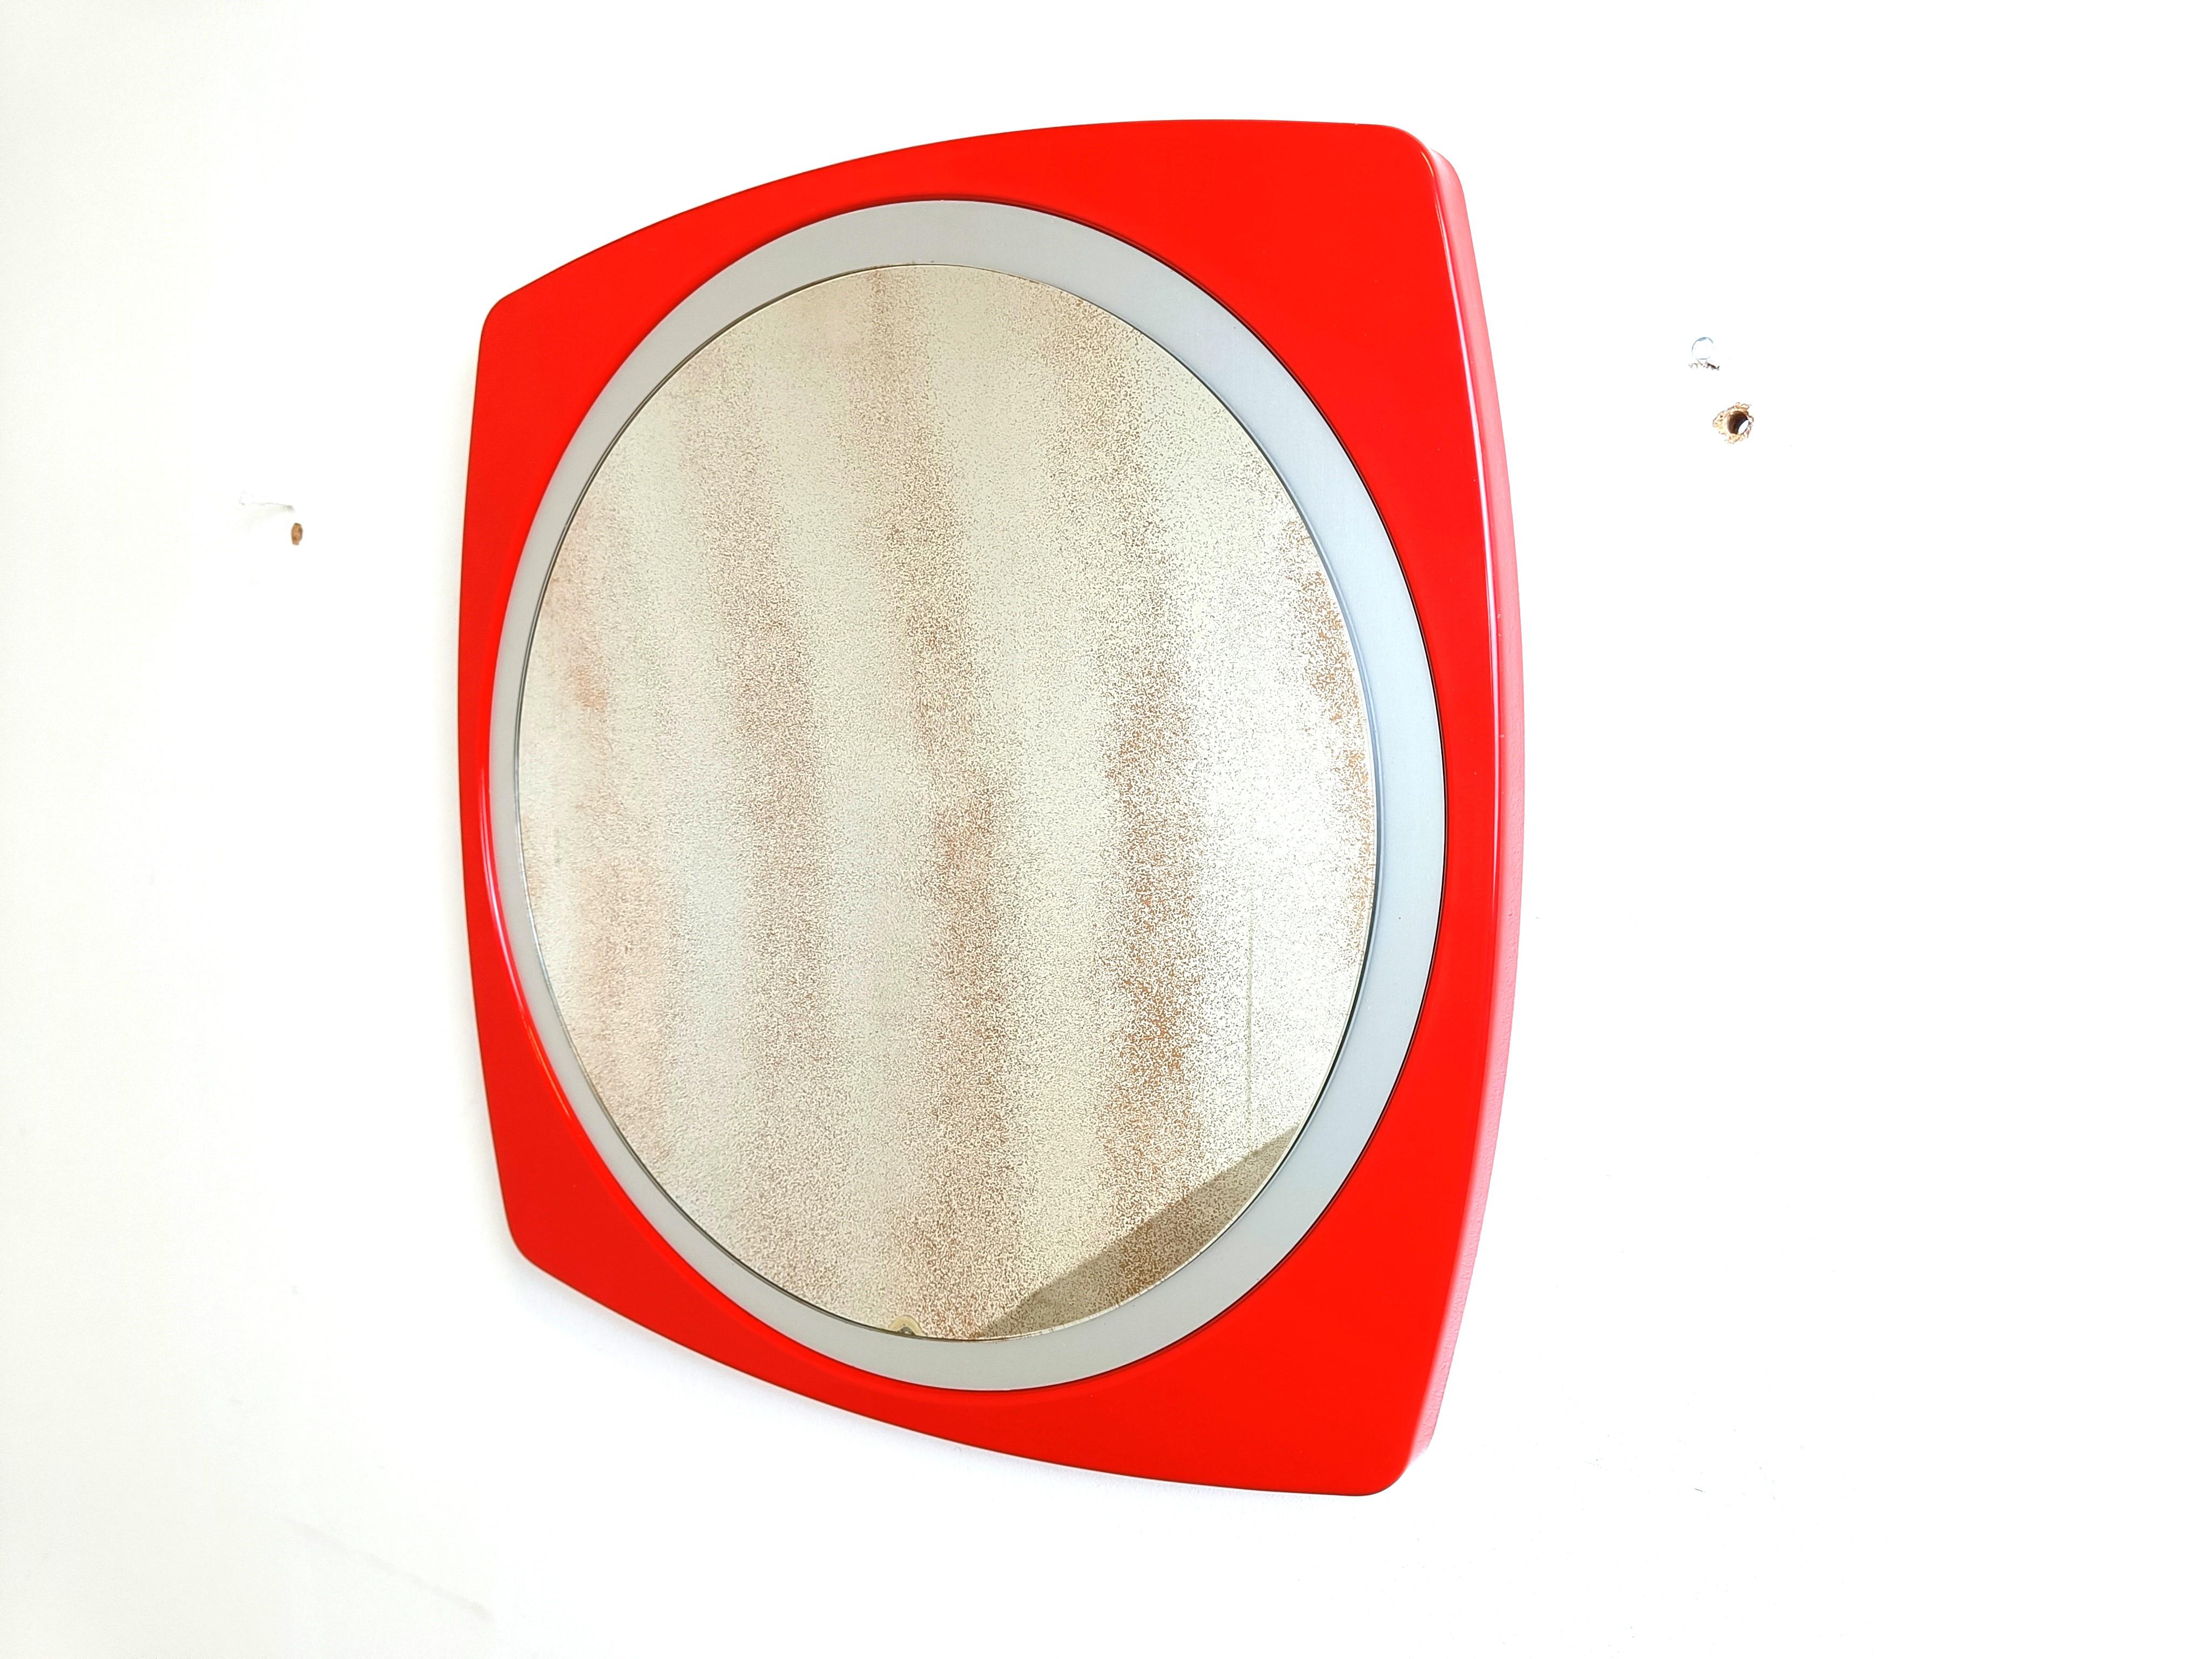 Miroir de l'ère spatiale avec un miroir patiné et un cadre en plastique rouge.

Années 1970 - Belgique

Dimensions :
Diamètre : 60cm/23.62